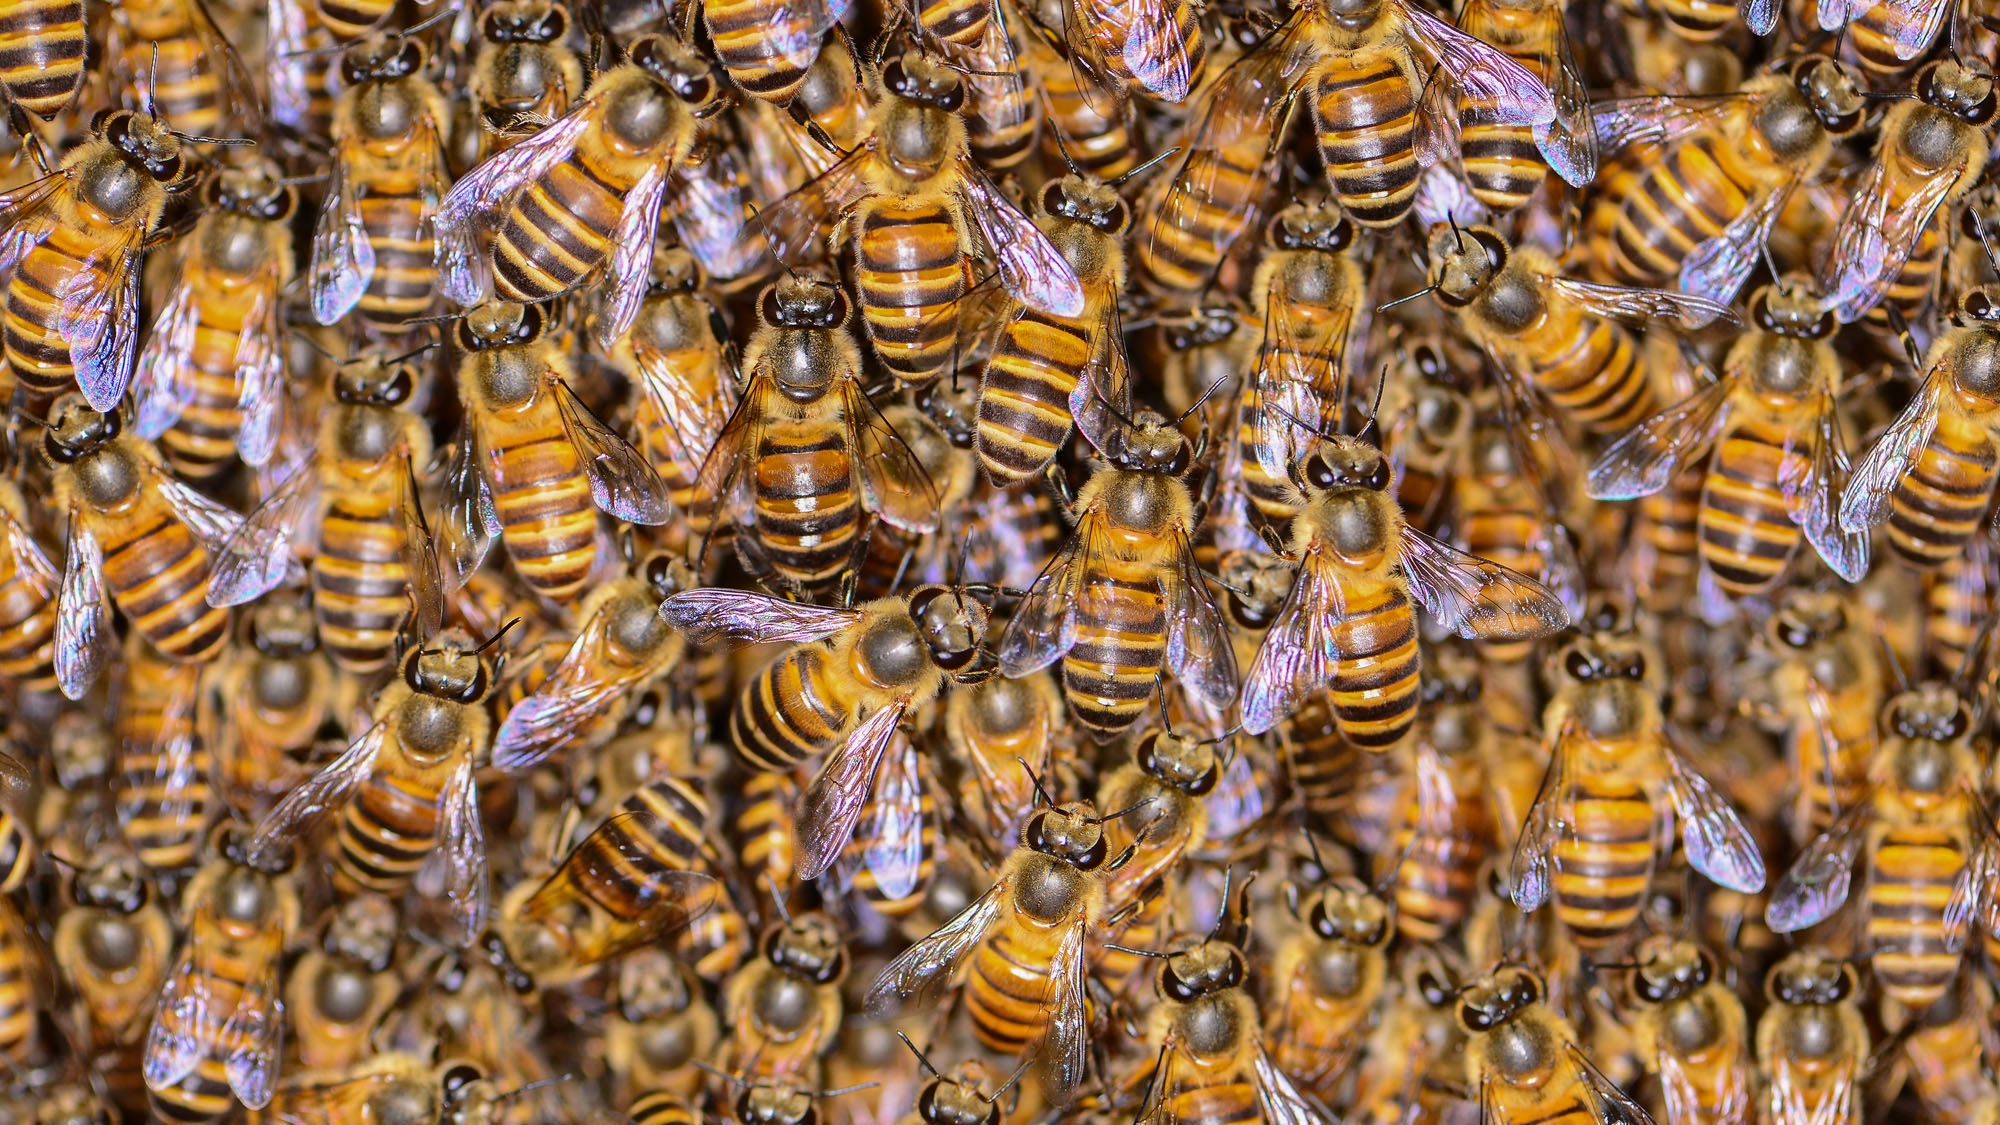 蜜蜂群